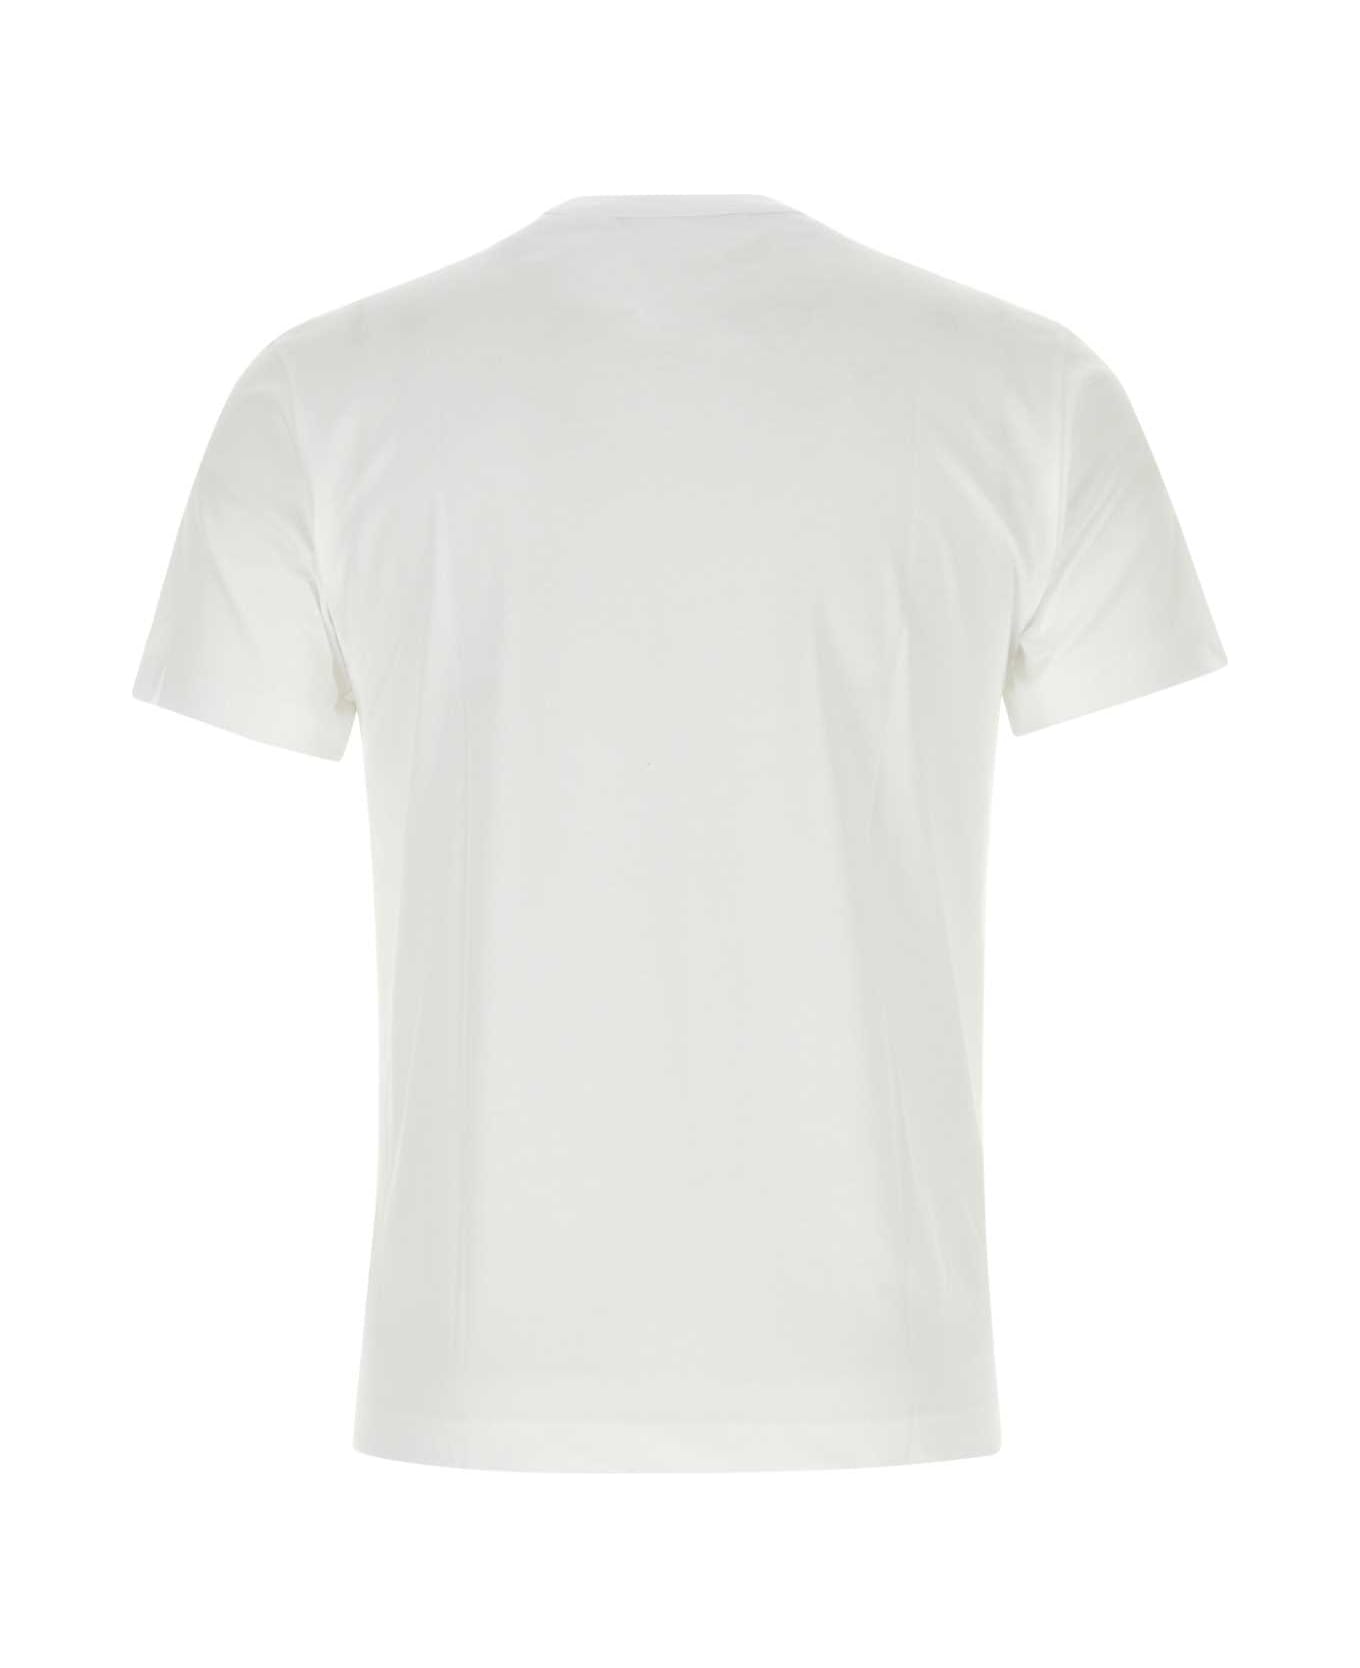 Comme des Garçons White Cotton T-shirt - WHITE シャツ